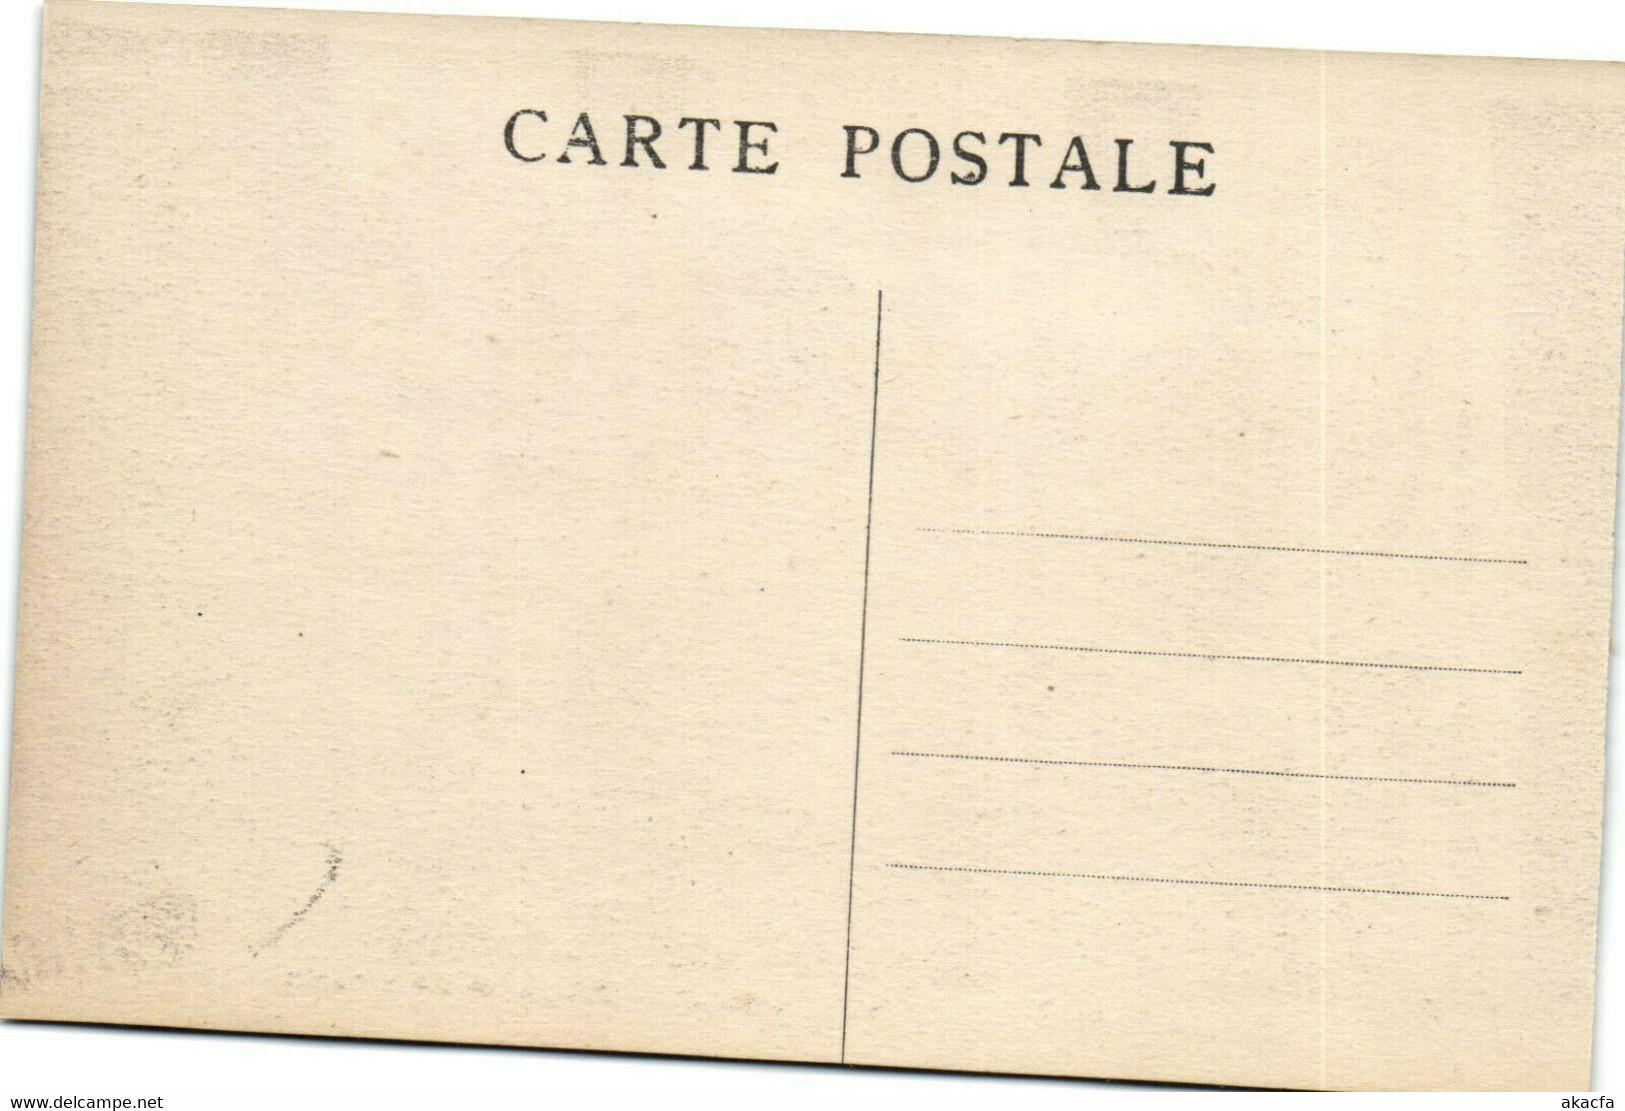 PC UK, SALOMON ISLANDS, PARURES DE FÉTE, Vintage Postcard (b33520) - Solomoneilanden